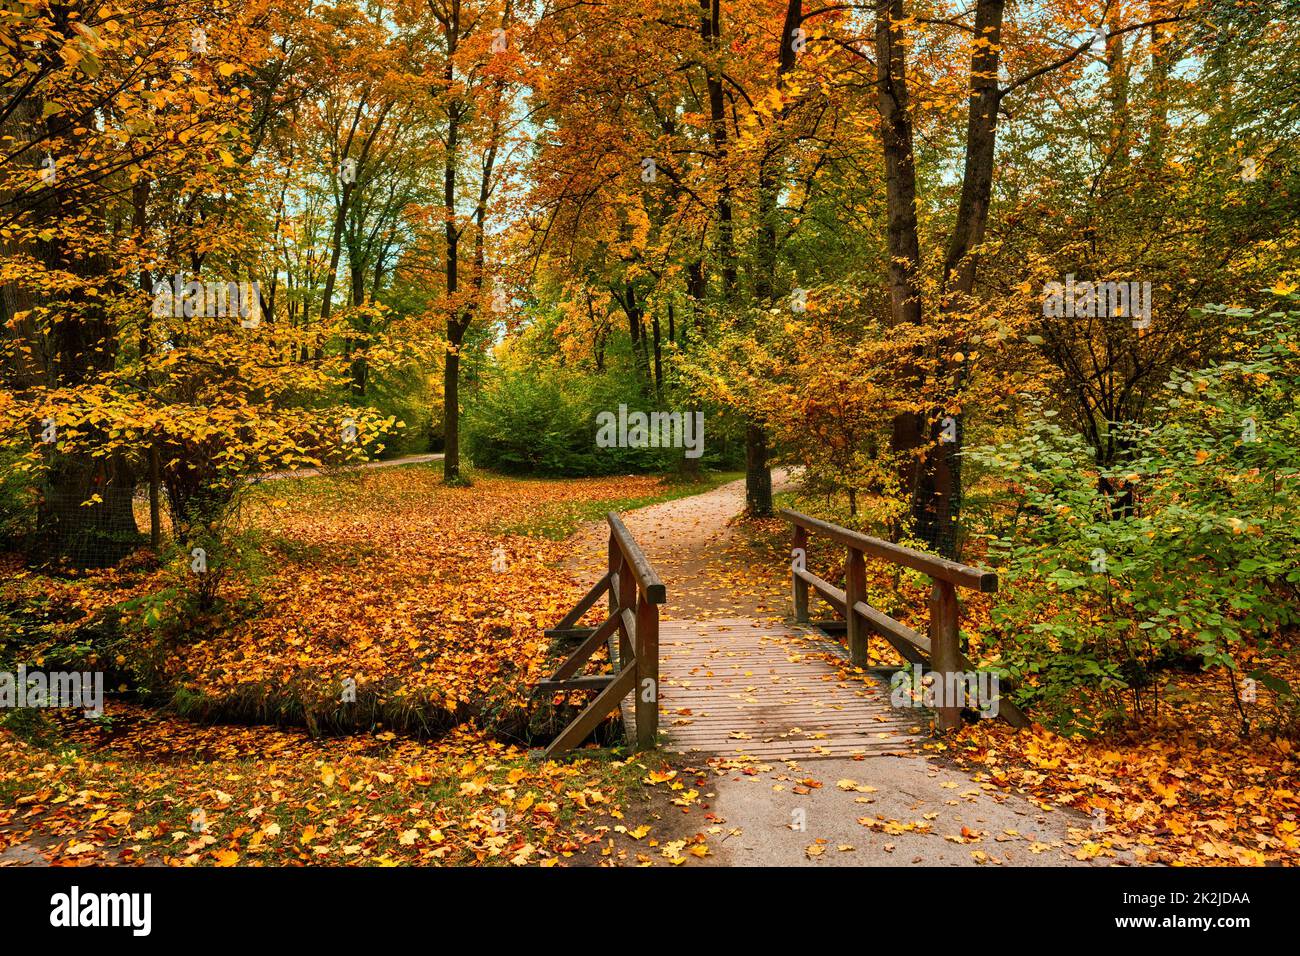 Munich English garden Englischer garten park in autumn. Munchen, Bavaria, Germany Stock Photo